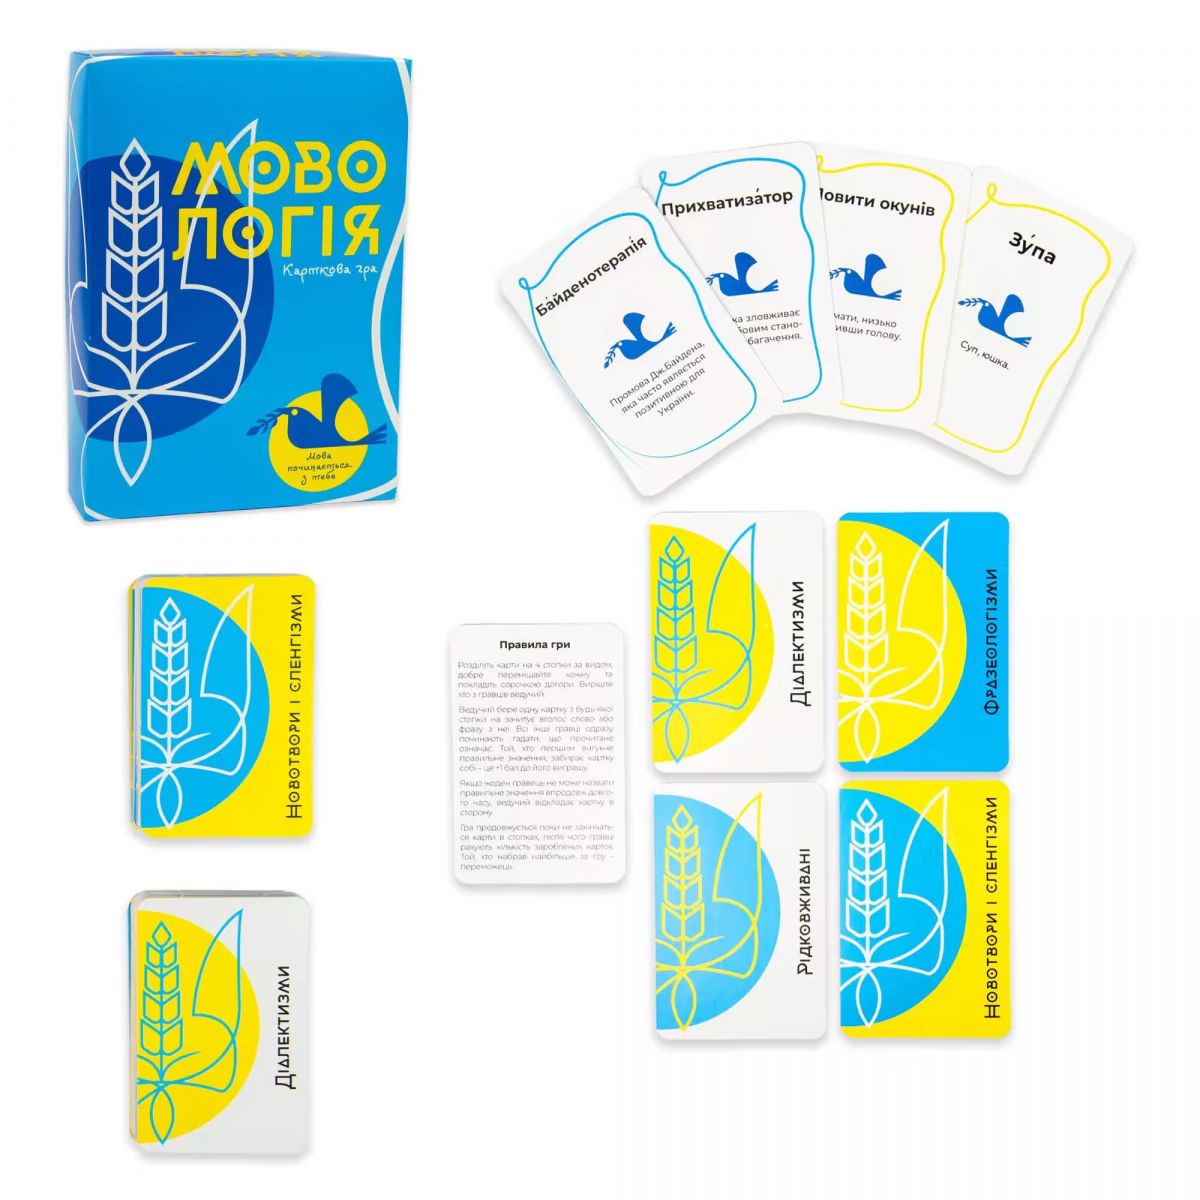 Карткова гра "Мовологія", українською мовою